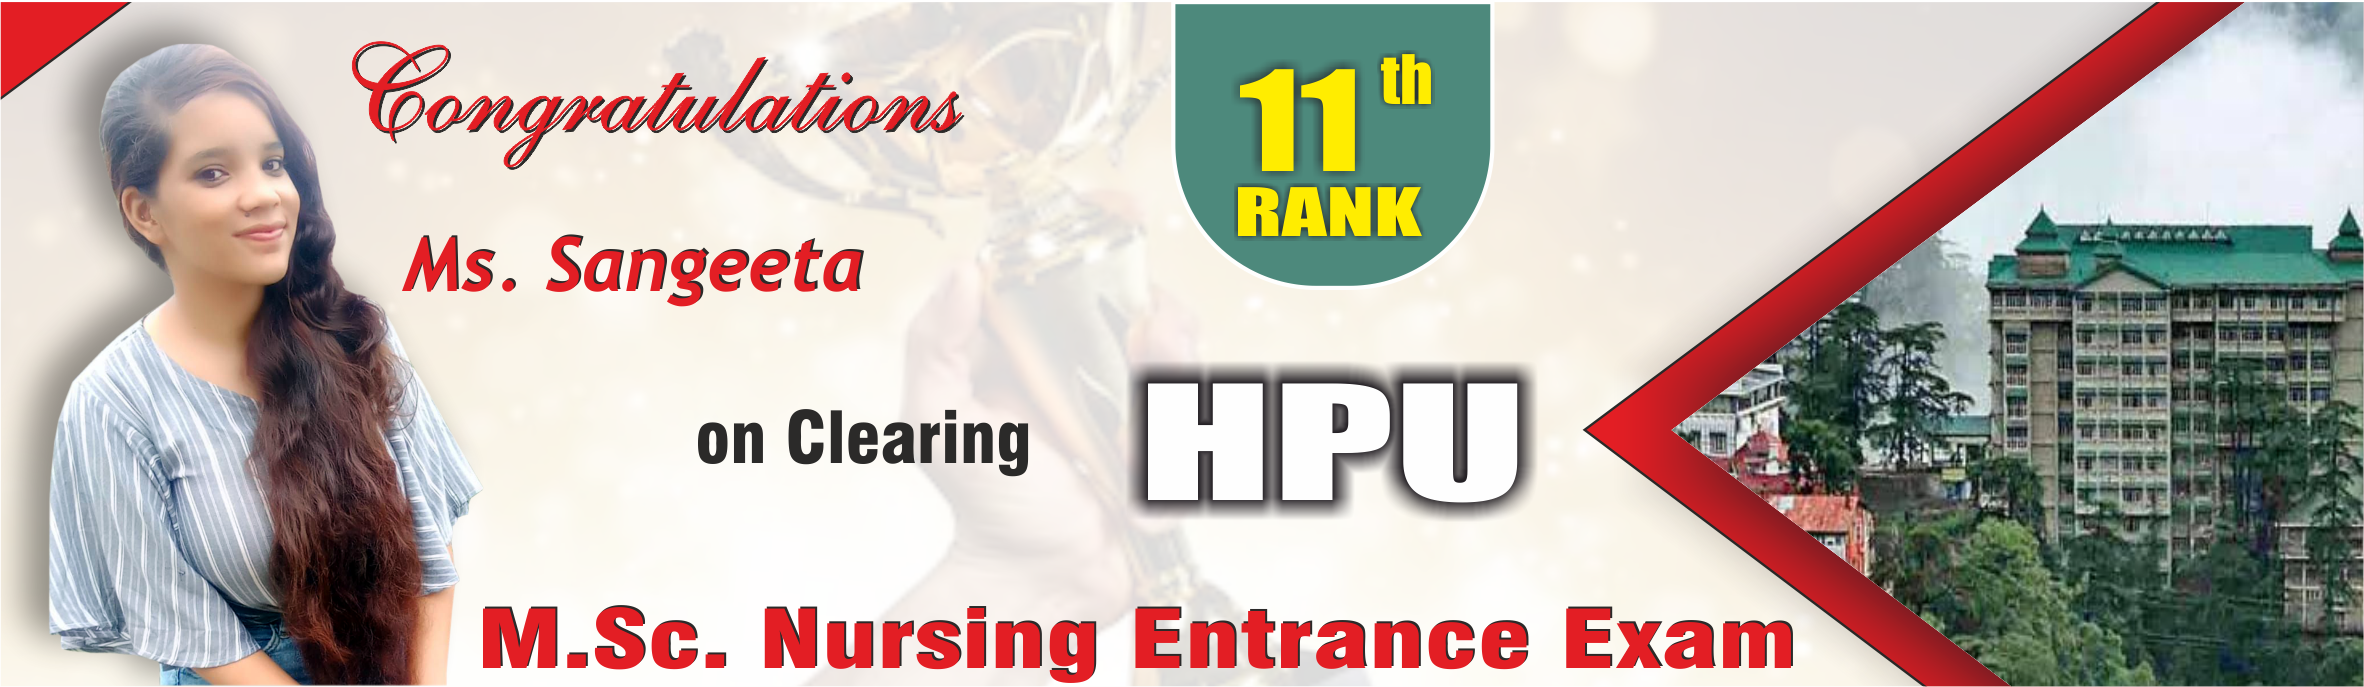 1-Sangeeta 11th rank hpu msc nursing entrance